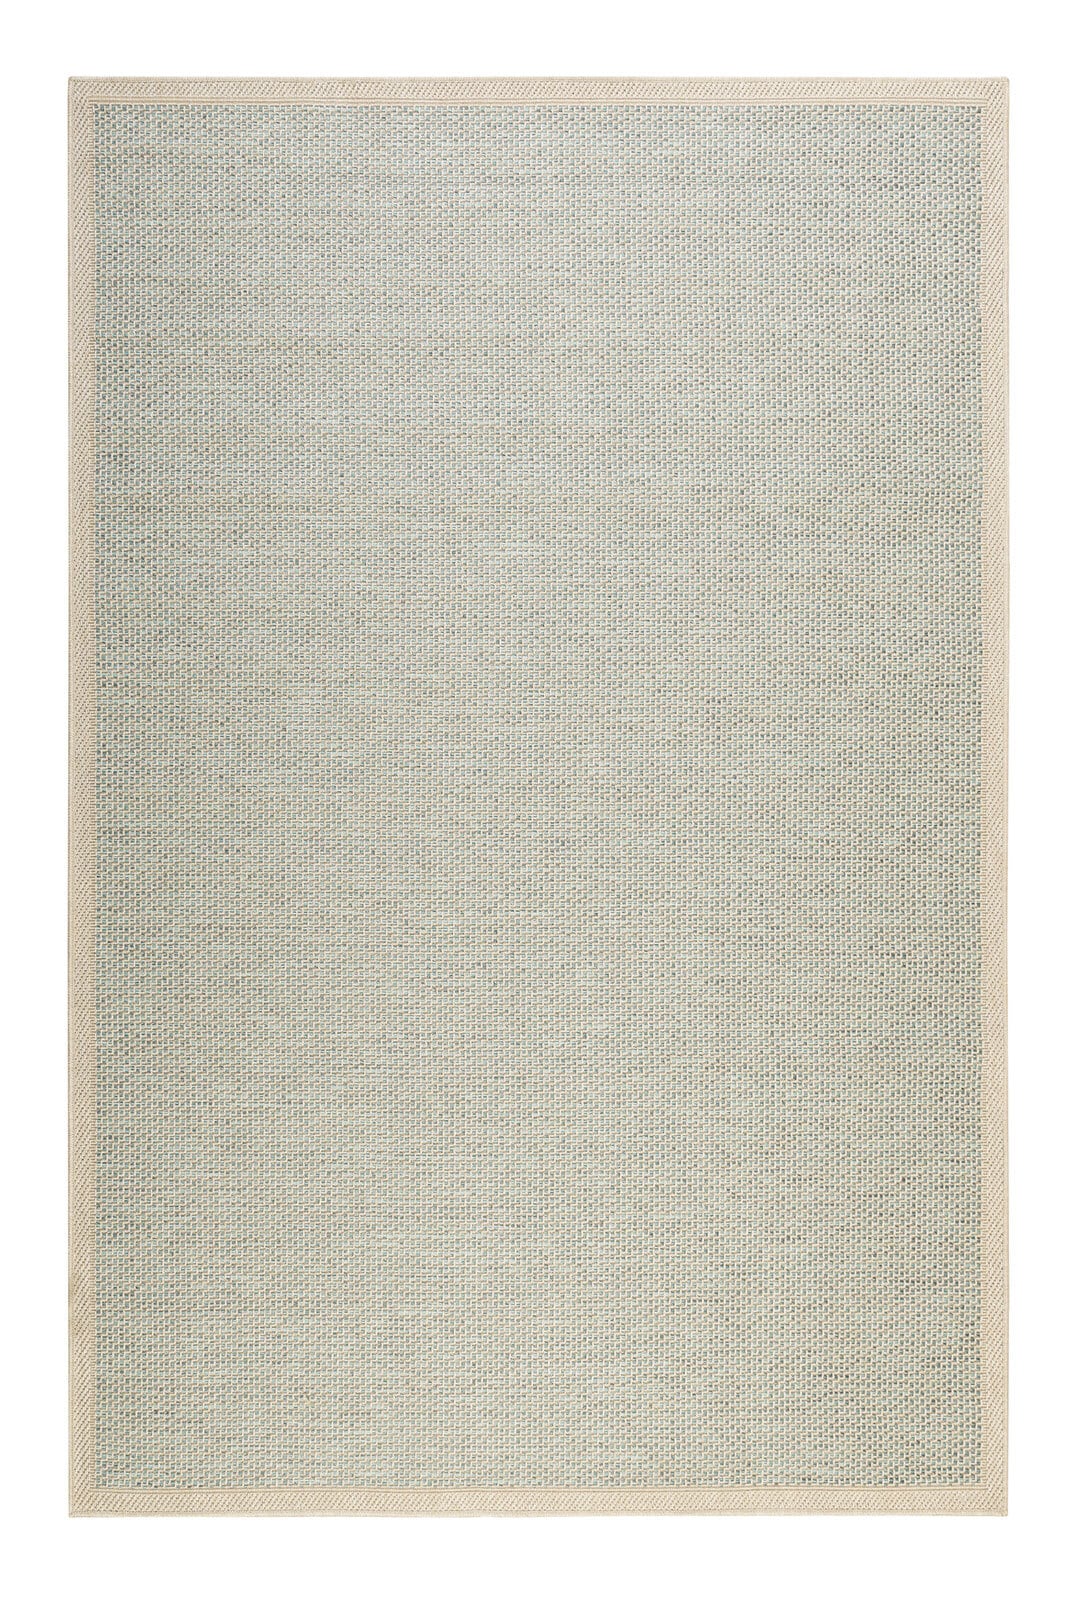 ESPRIT Outdoorteppich MIDLAND 133 x 200 cm beige/türkis